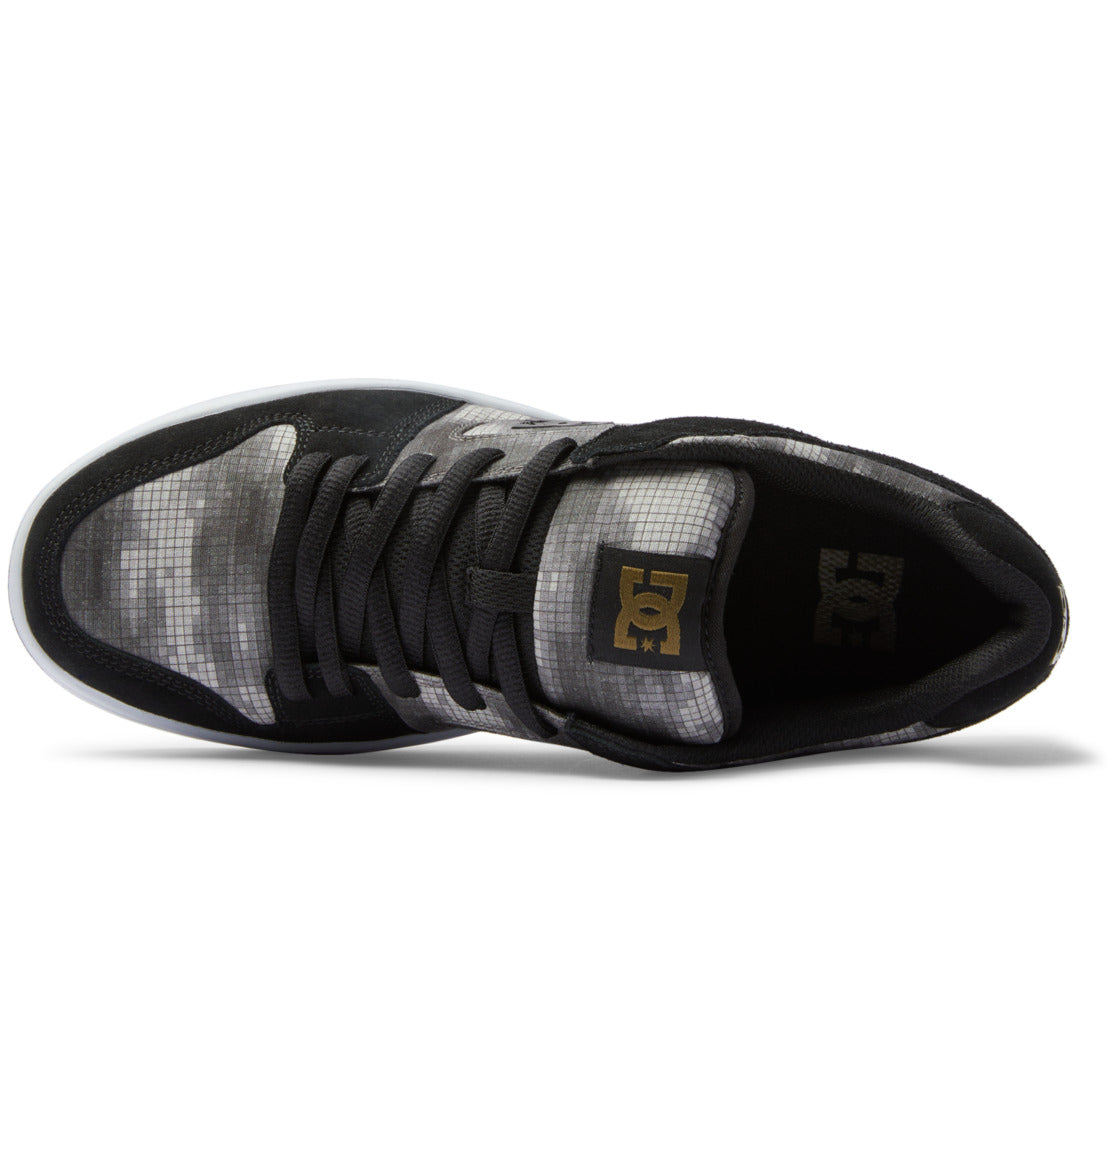 Dc Shoes Manteca 4 Skateschuh – Schwarz/Camouflage | Meistverkaufte Produkte | Neue Produkte | Neueste Produkte | surfdevils.com